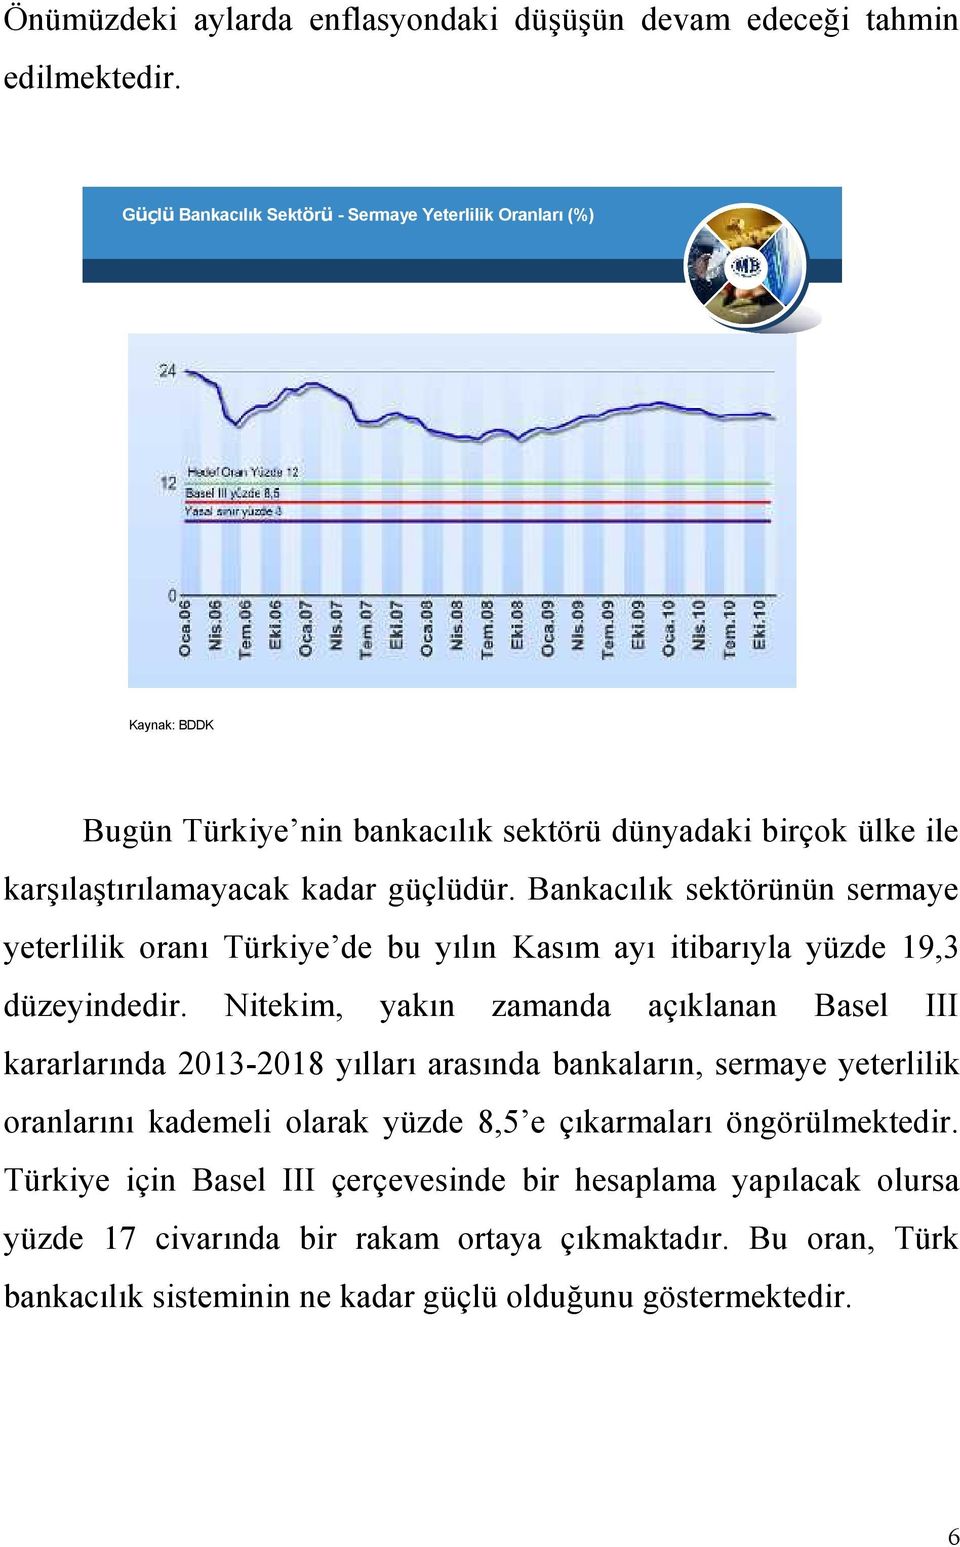 Bankacılık sektörünün sermaye yeterlilik oranı Türkiye de bu yılın Kasım ayı itibarıyla yüzde 19,3 düzeyindedir.